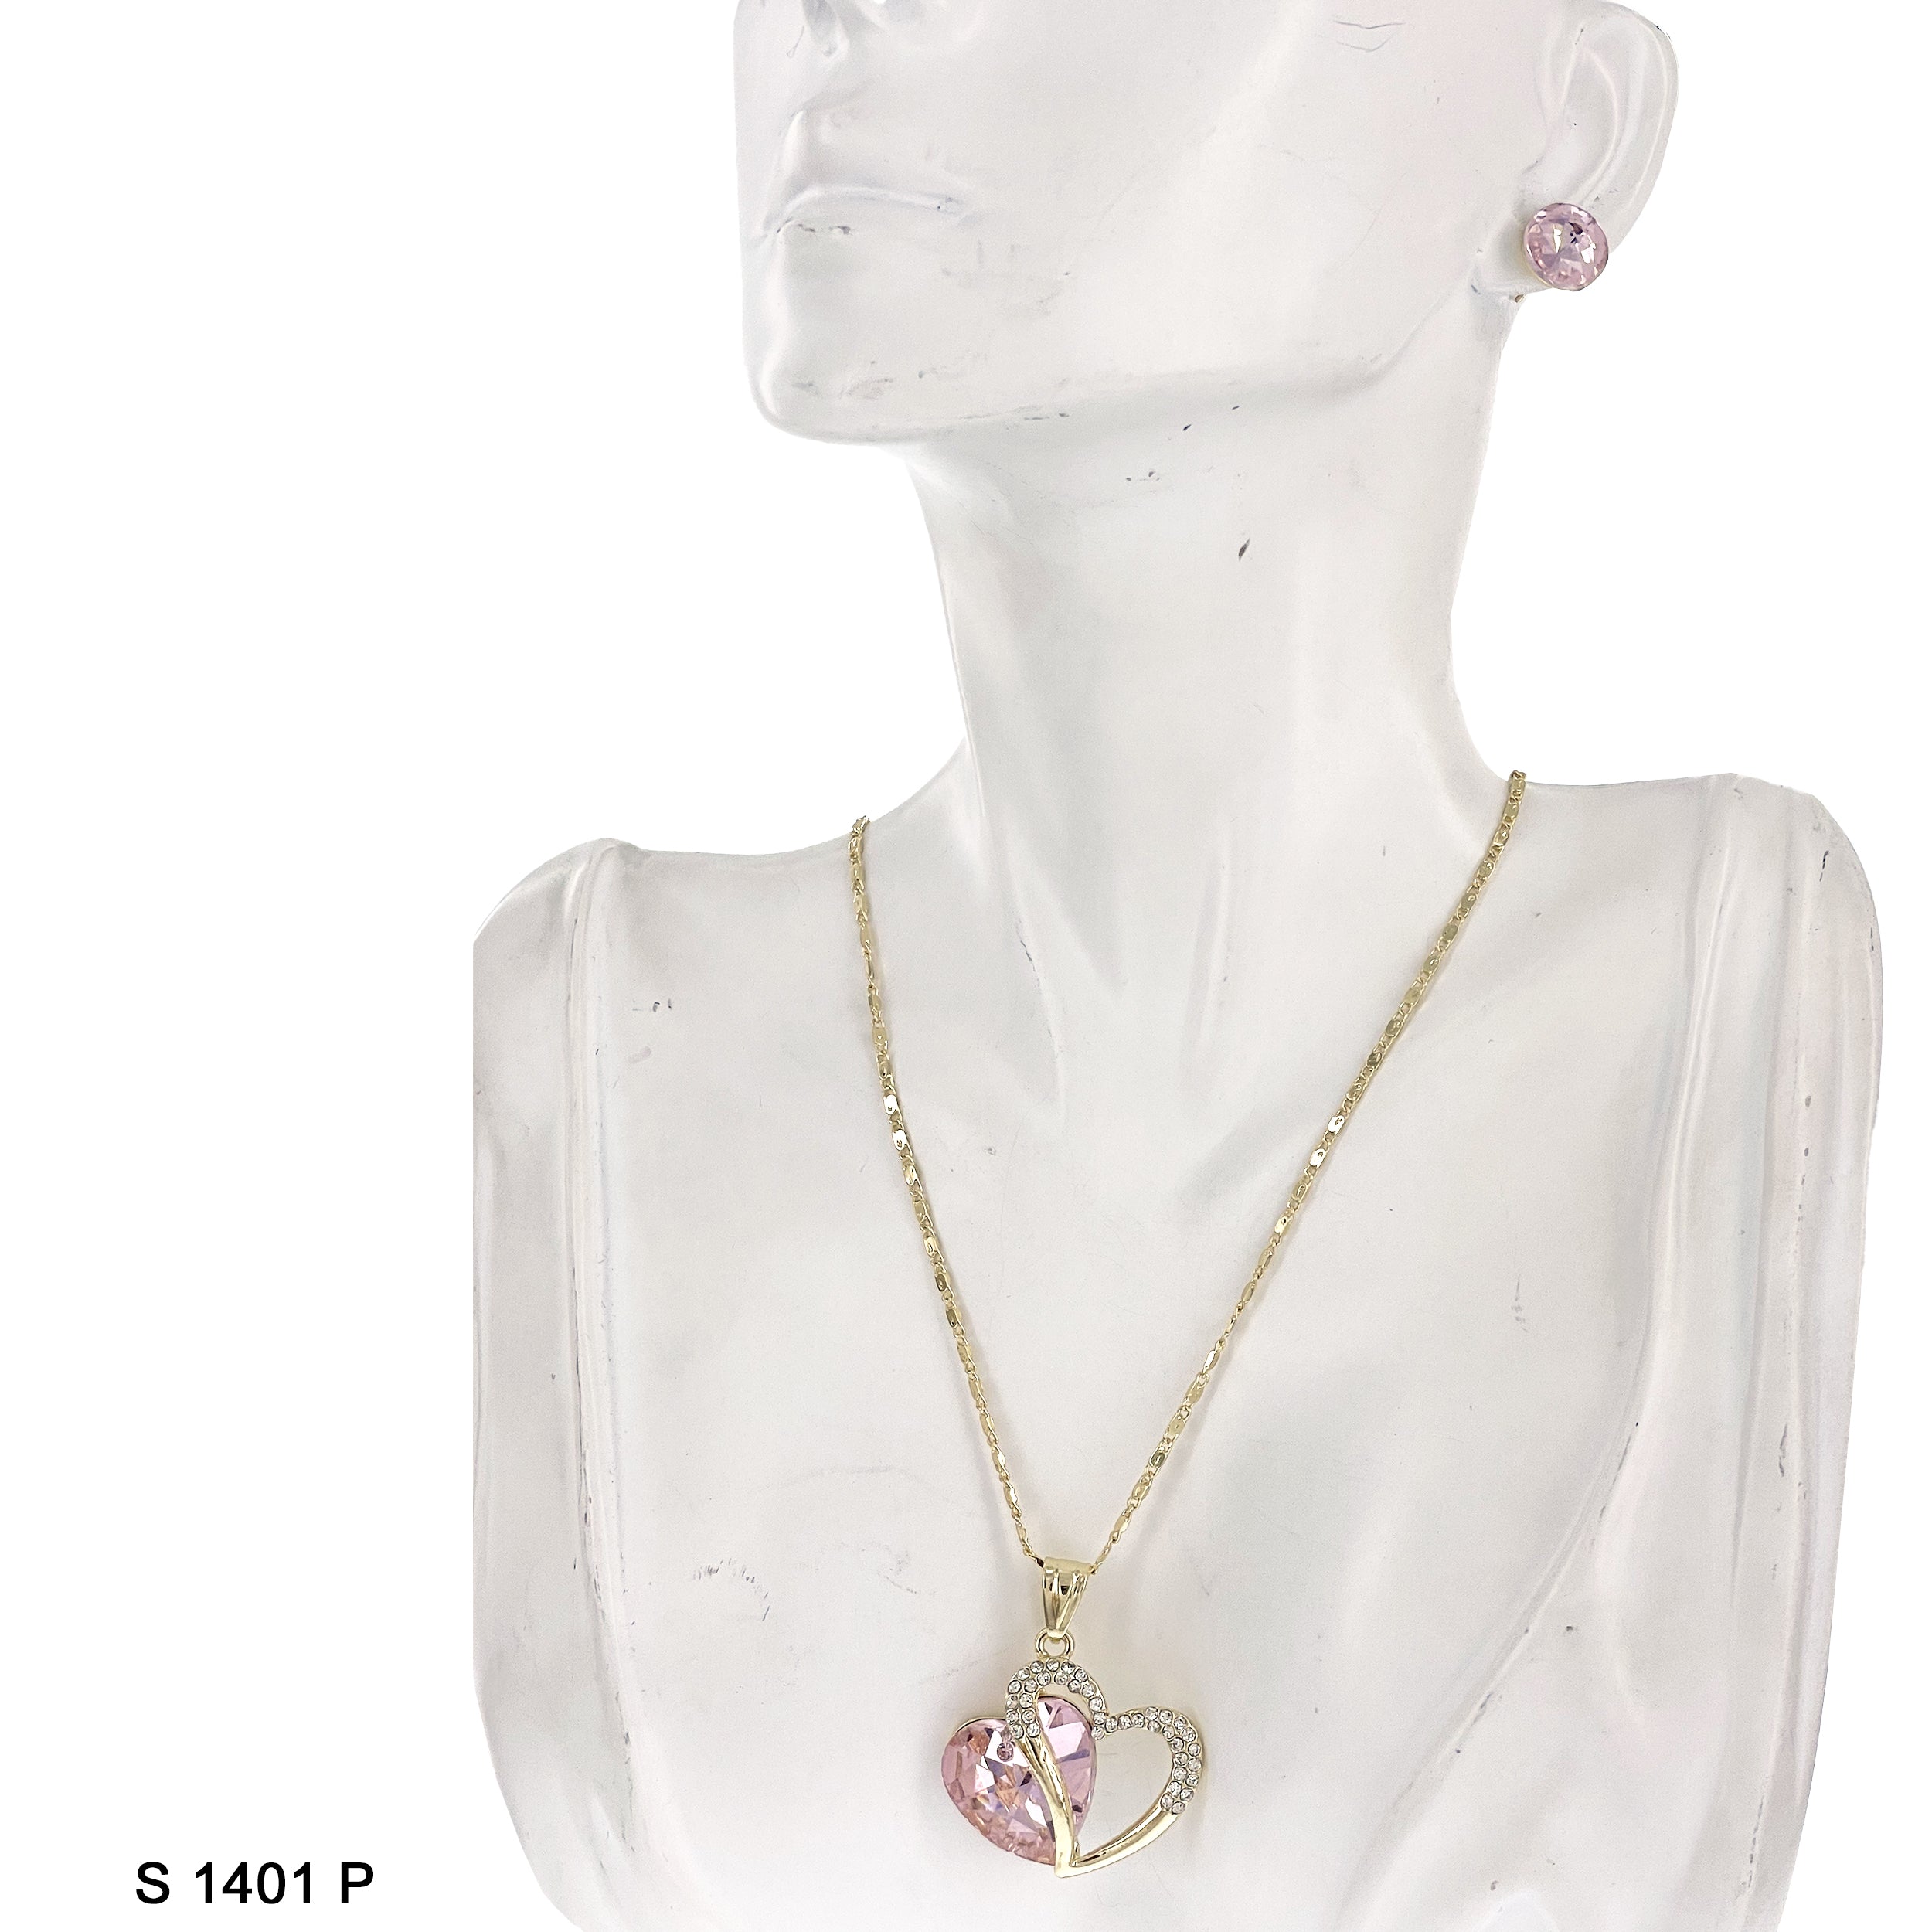 Double Heart Pendant Necklace Set S 1401 P